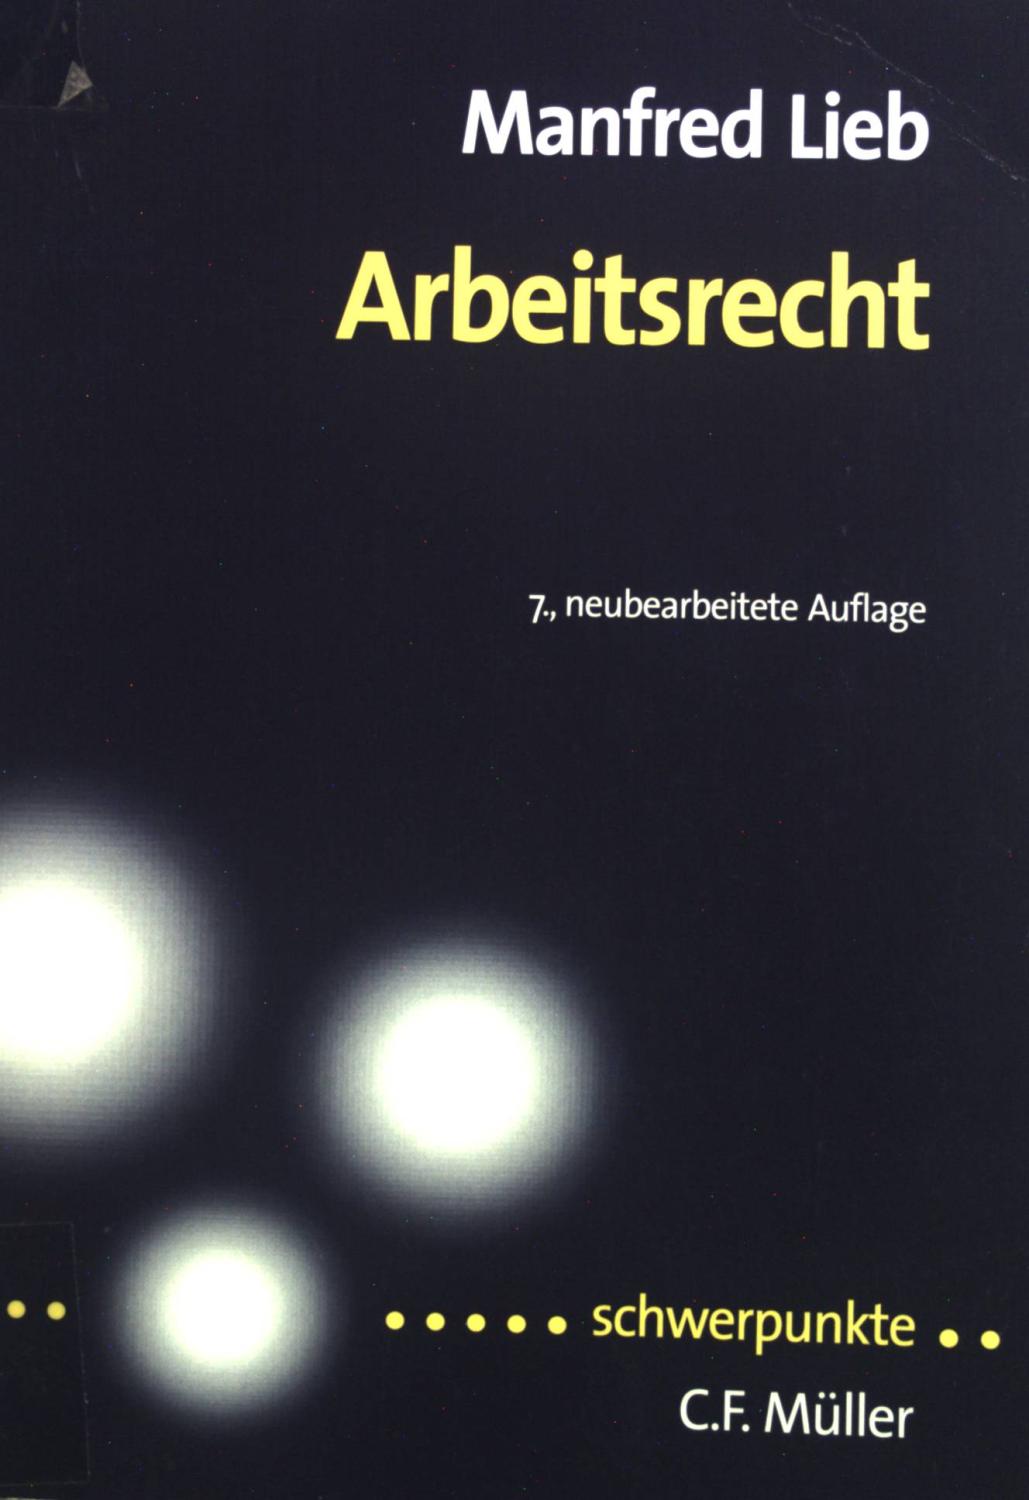 Arbeitsrecht. Schwerpunkte ; Bd. 10 / 1 - Lieb, Manfred